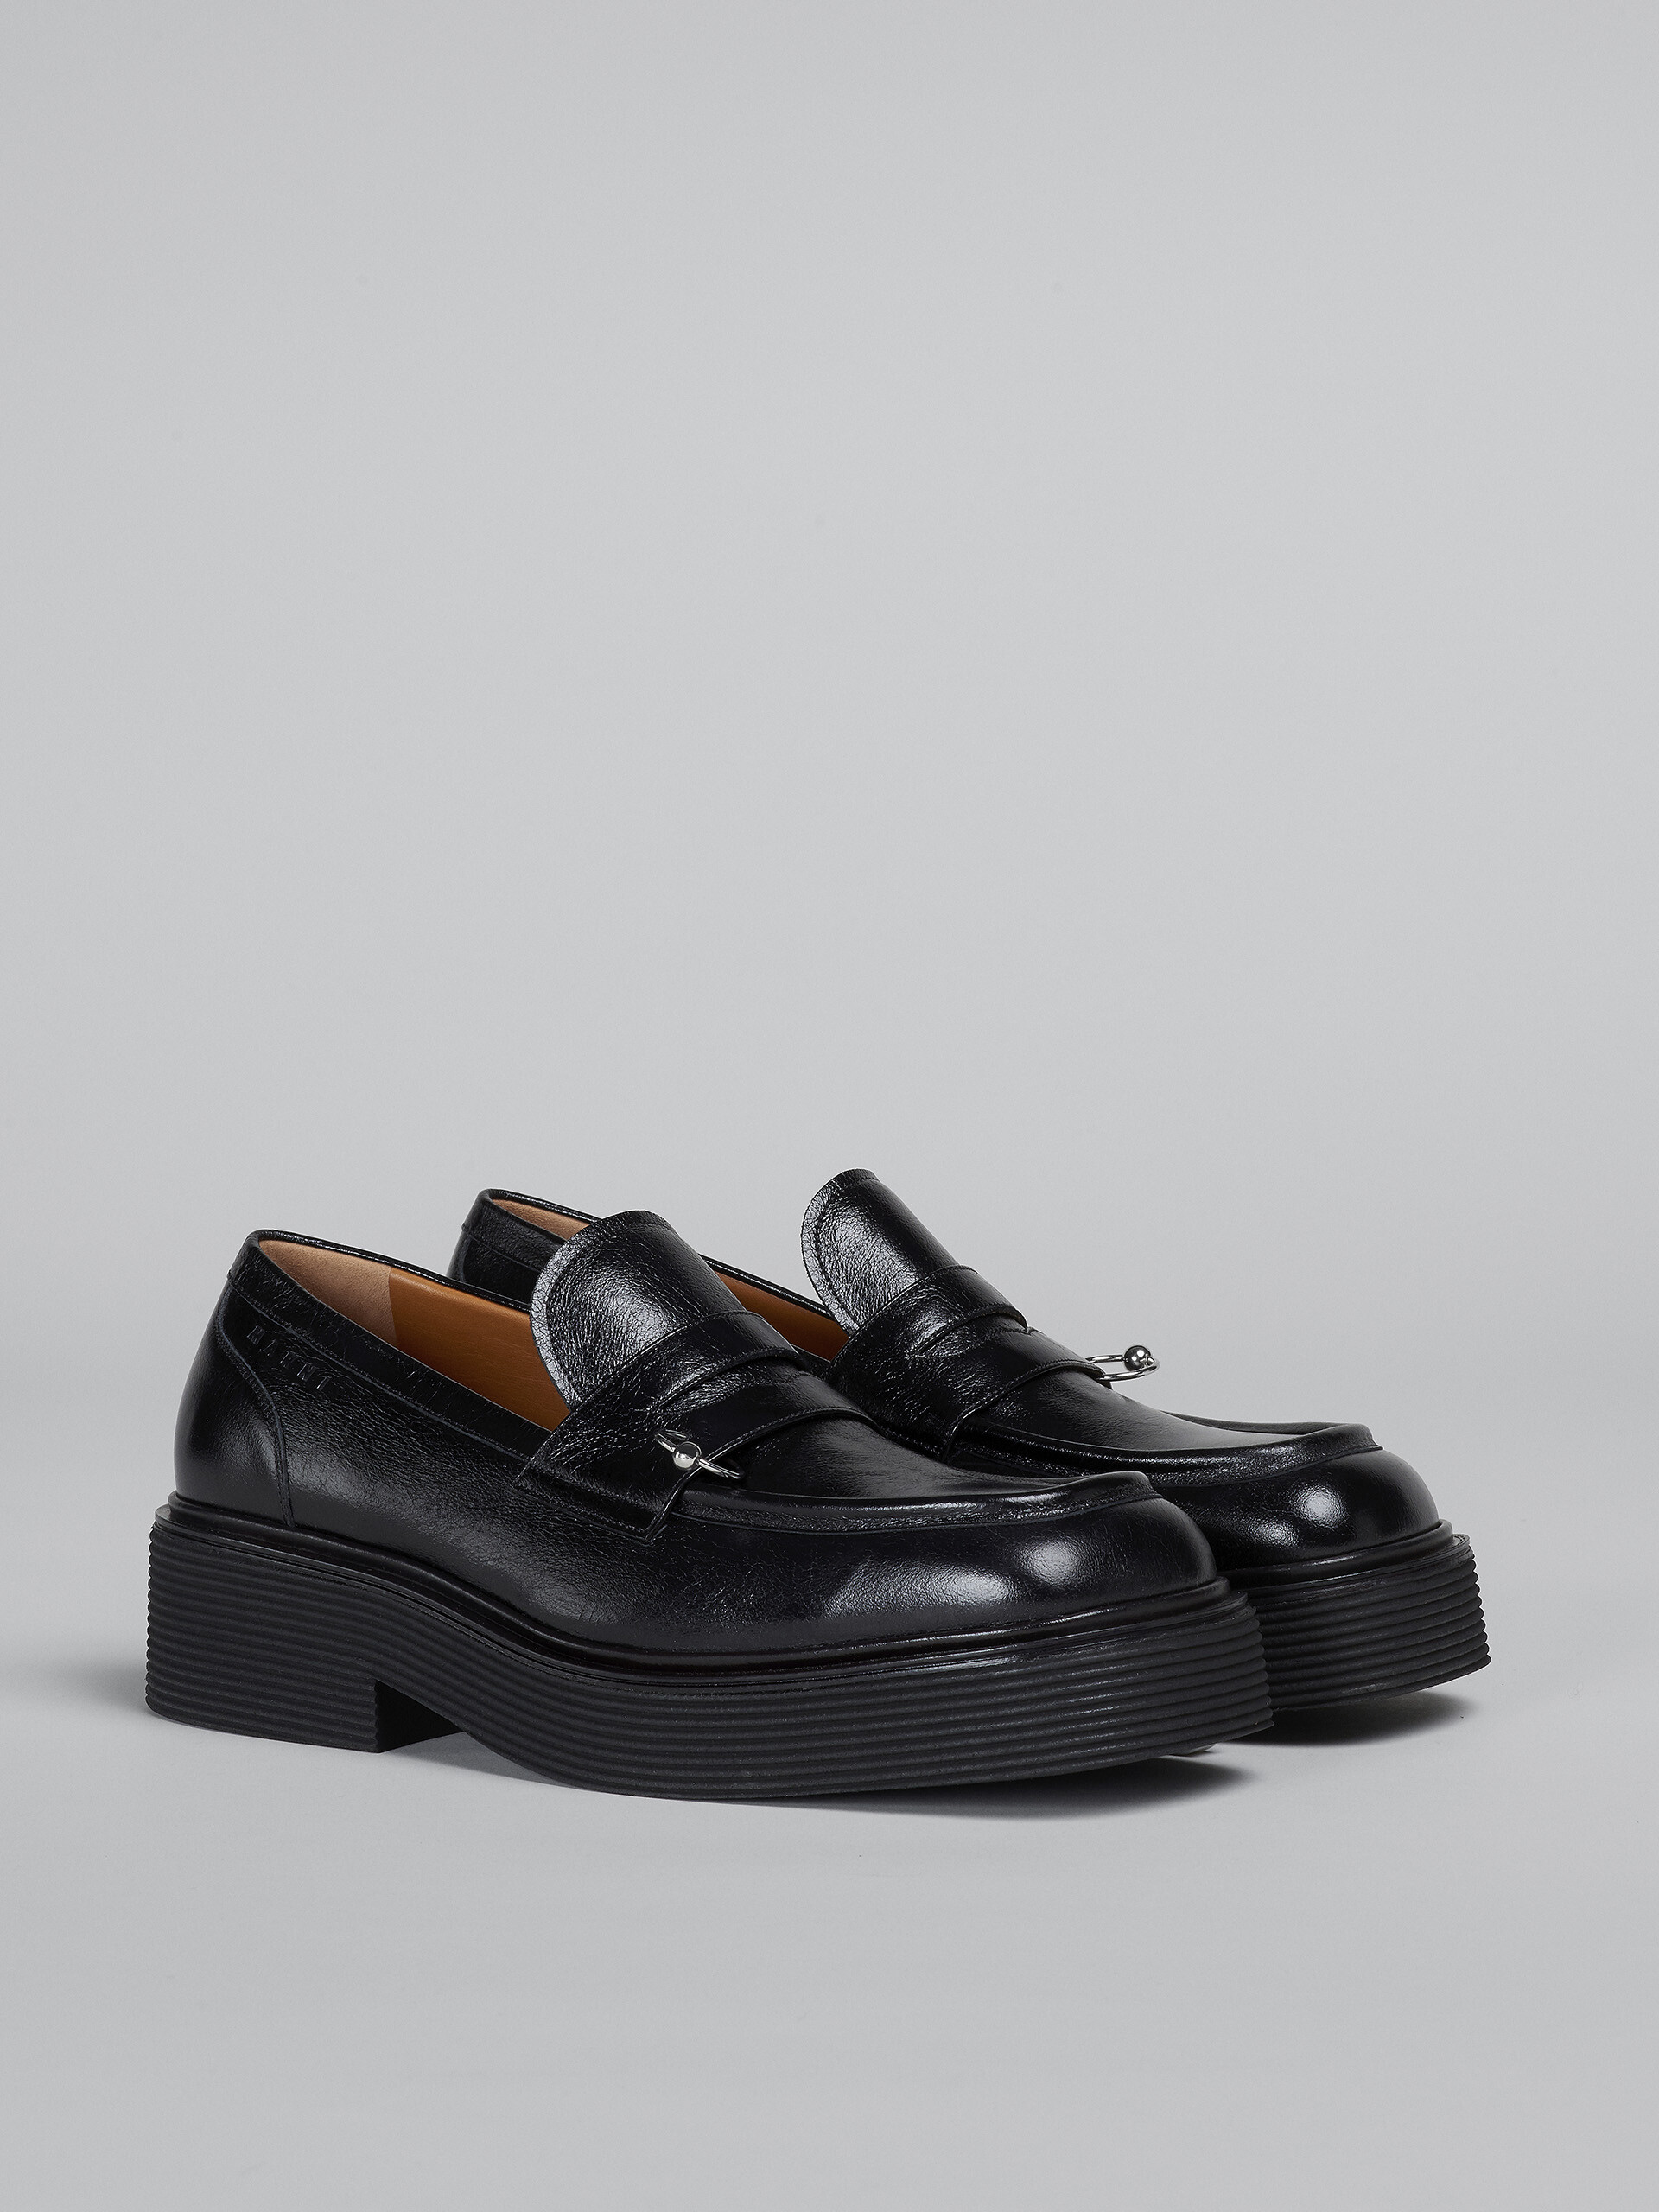 Mokassin aus schwarzem, glänzendem Leder - Schnürschuhe - Image 2